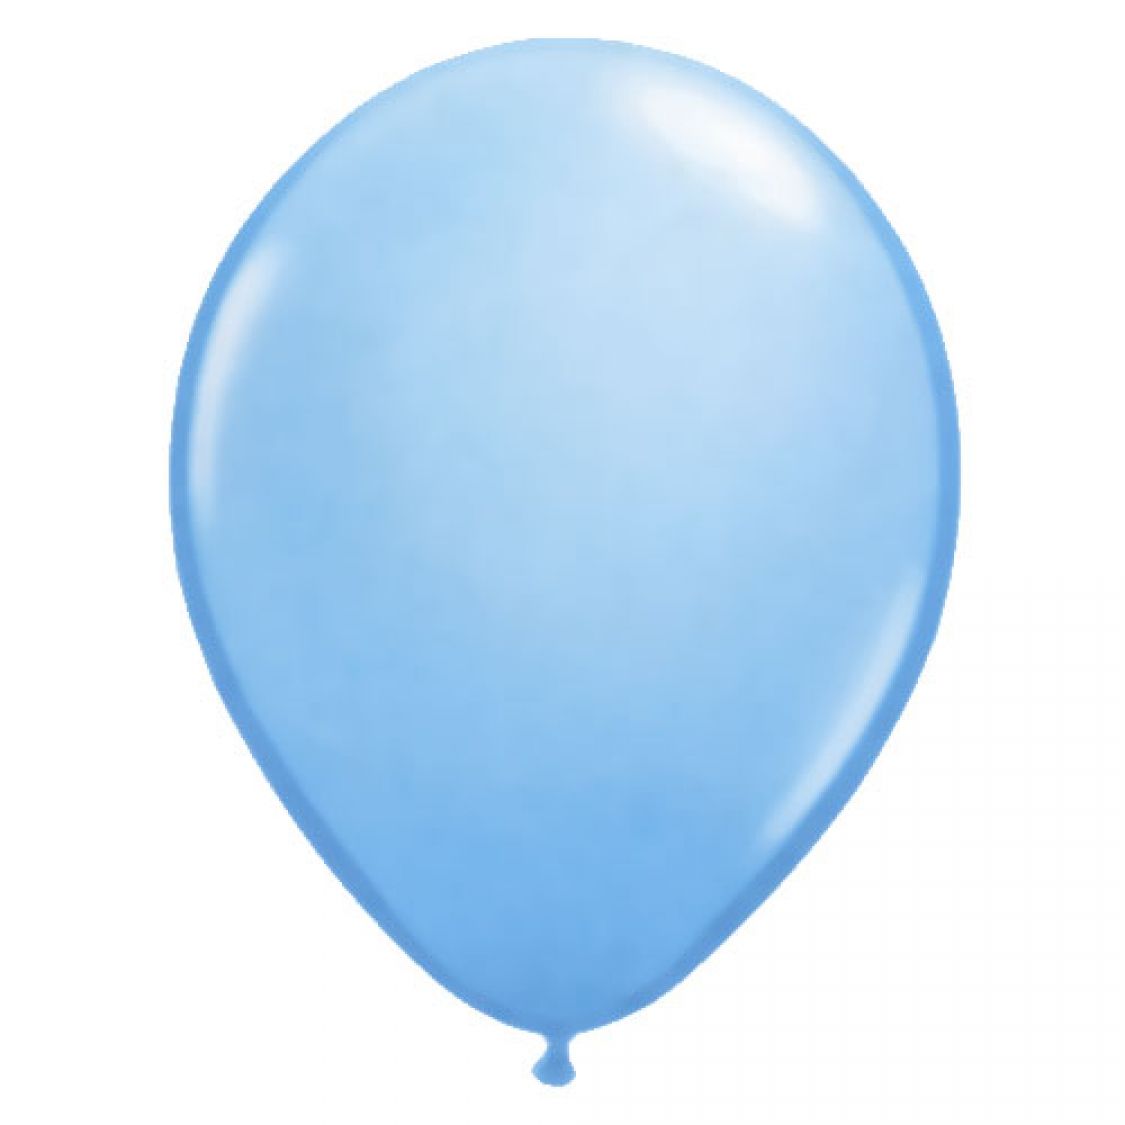 Ballon bleu pâle (Pale Blue) Qualatex